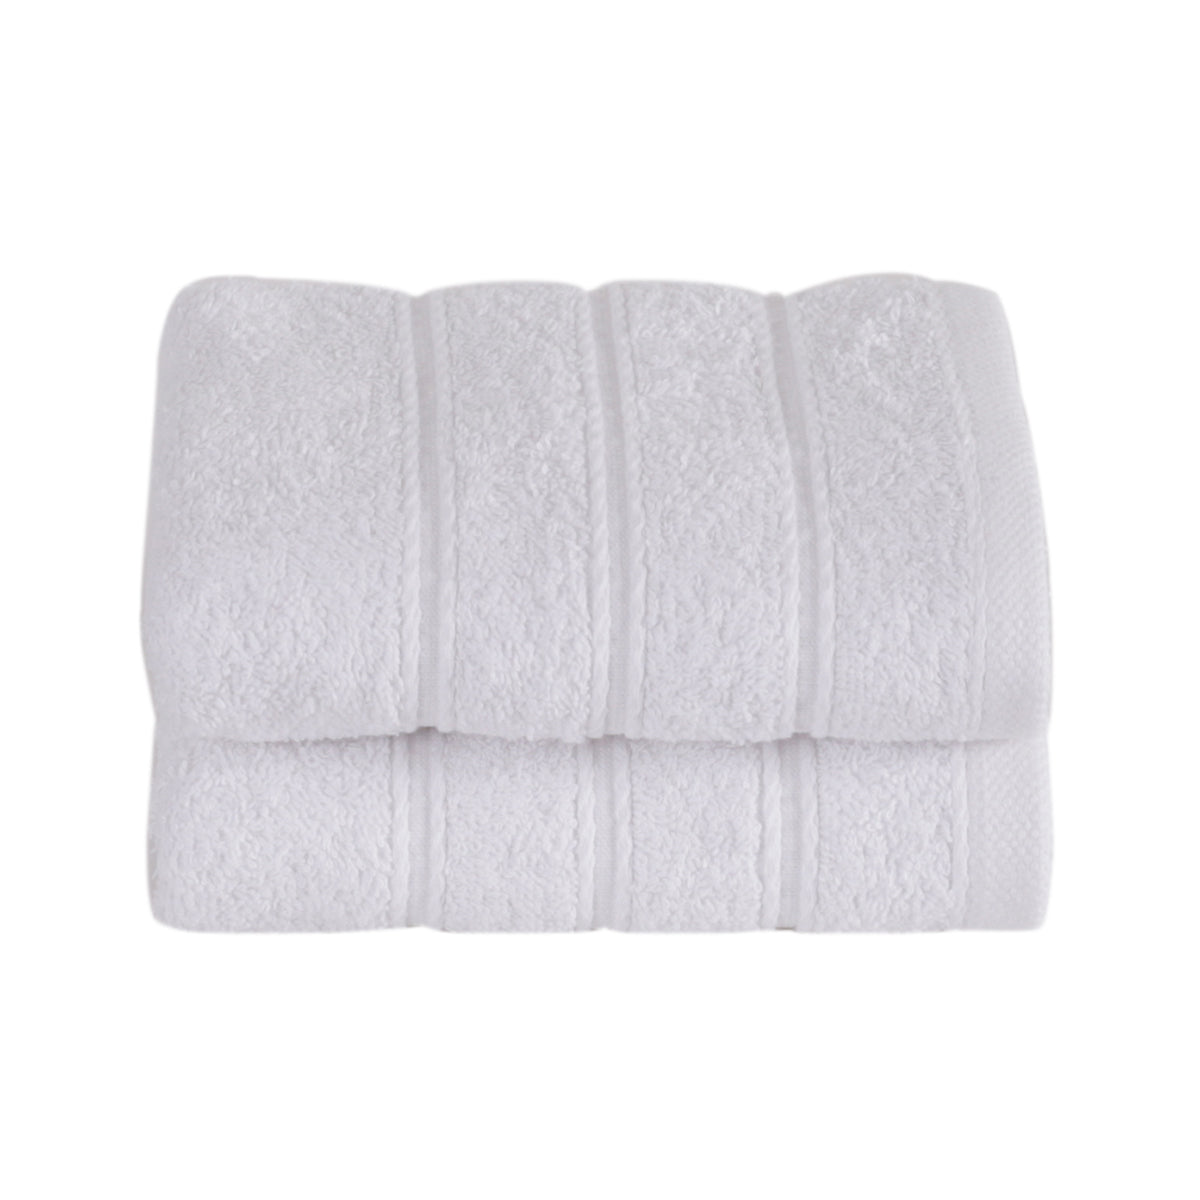 Irene Extra Soft White Towel Set